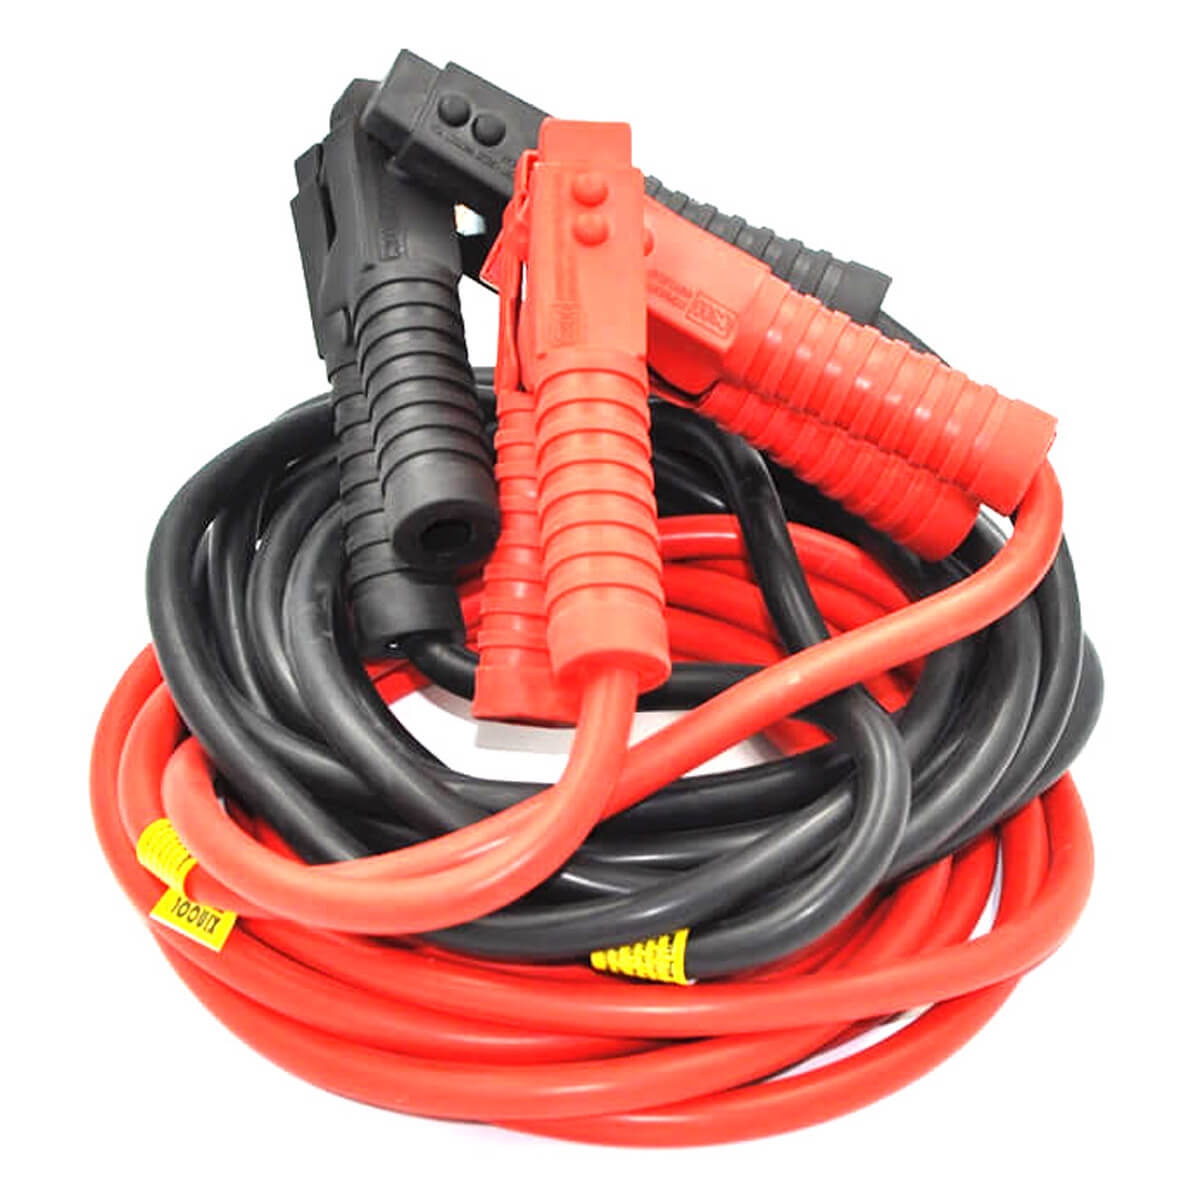 xincol-2500a-car-jumper-cables-20ft